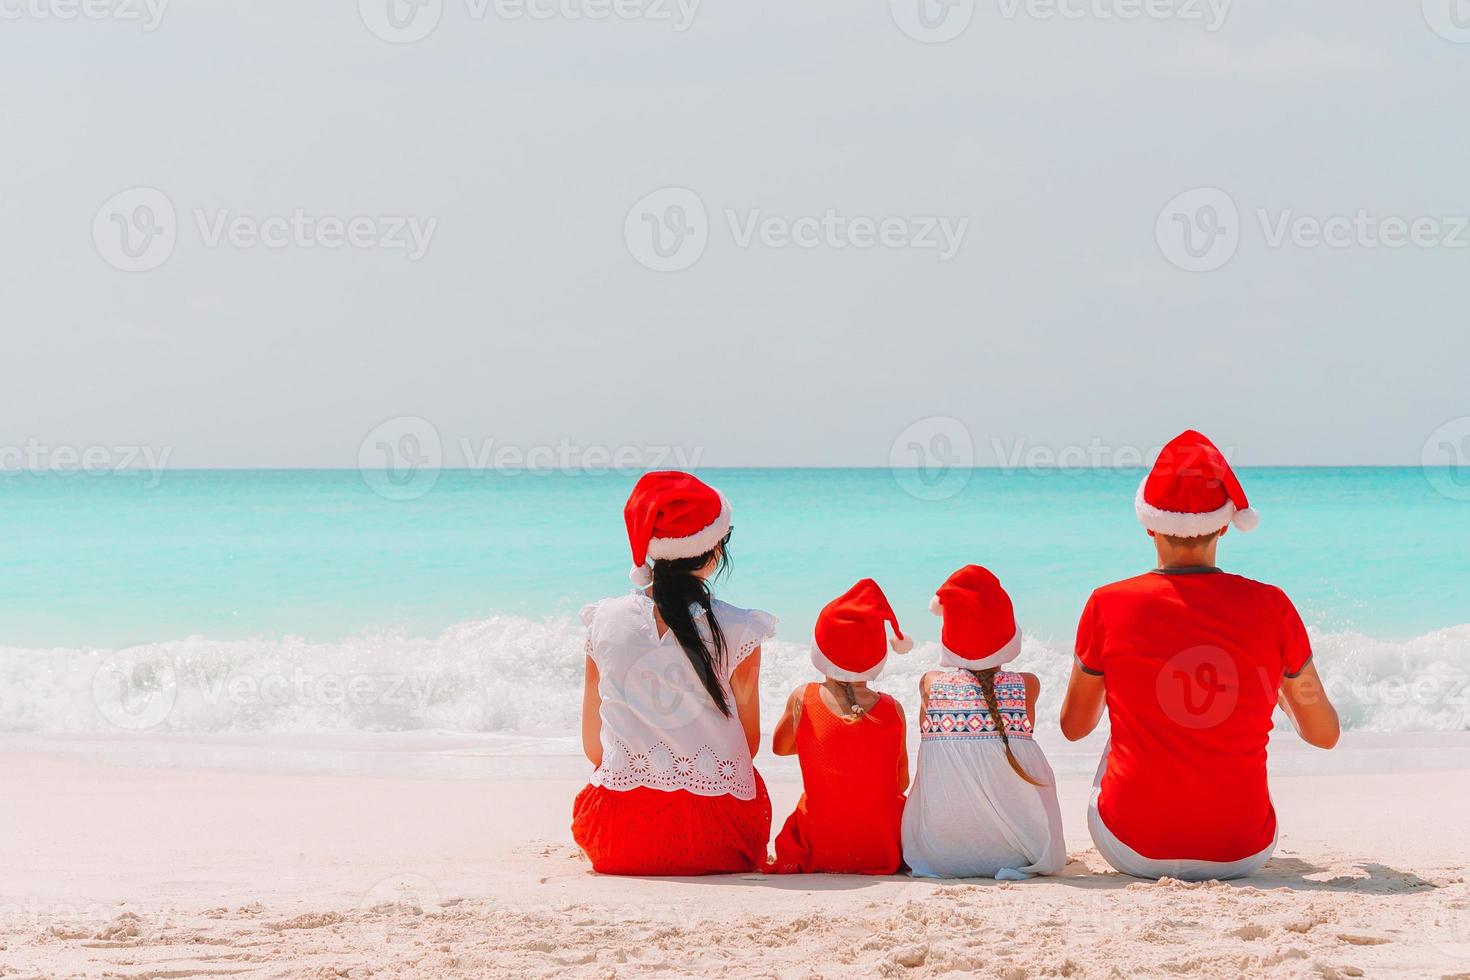 famille heureuse avec deux enfants en bonnet de noel en vacances d'été photo